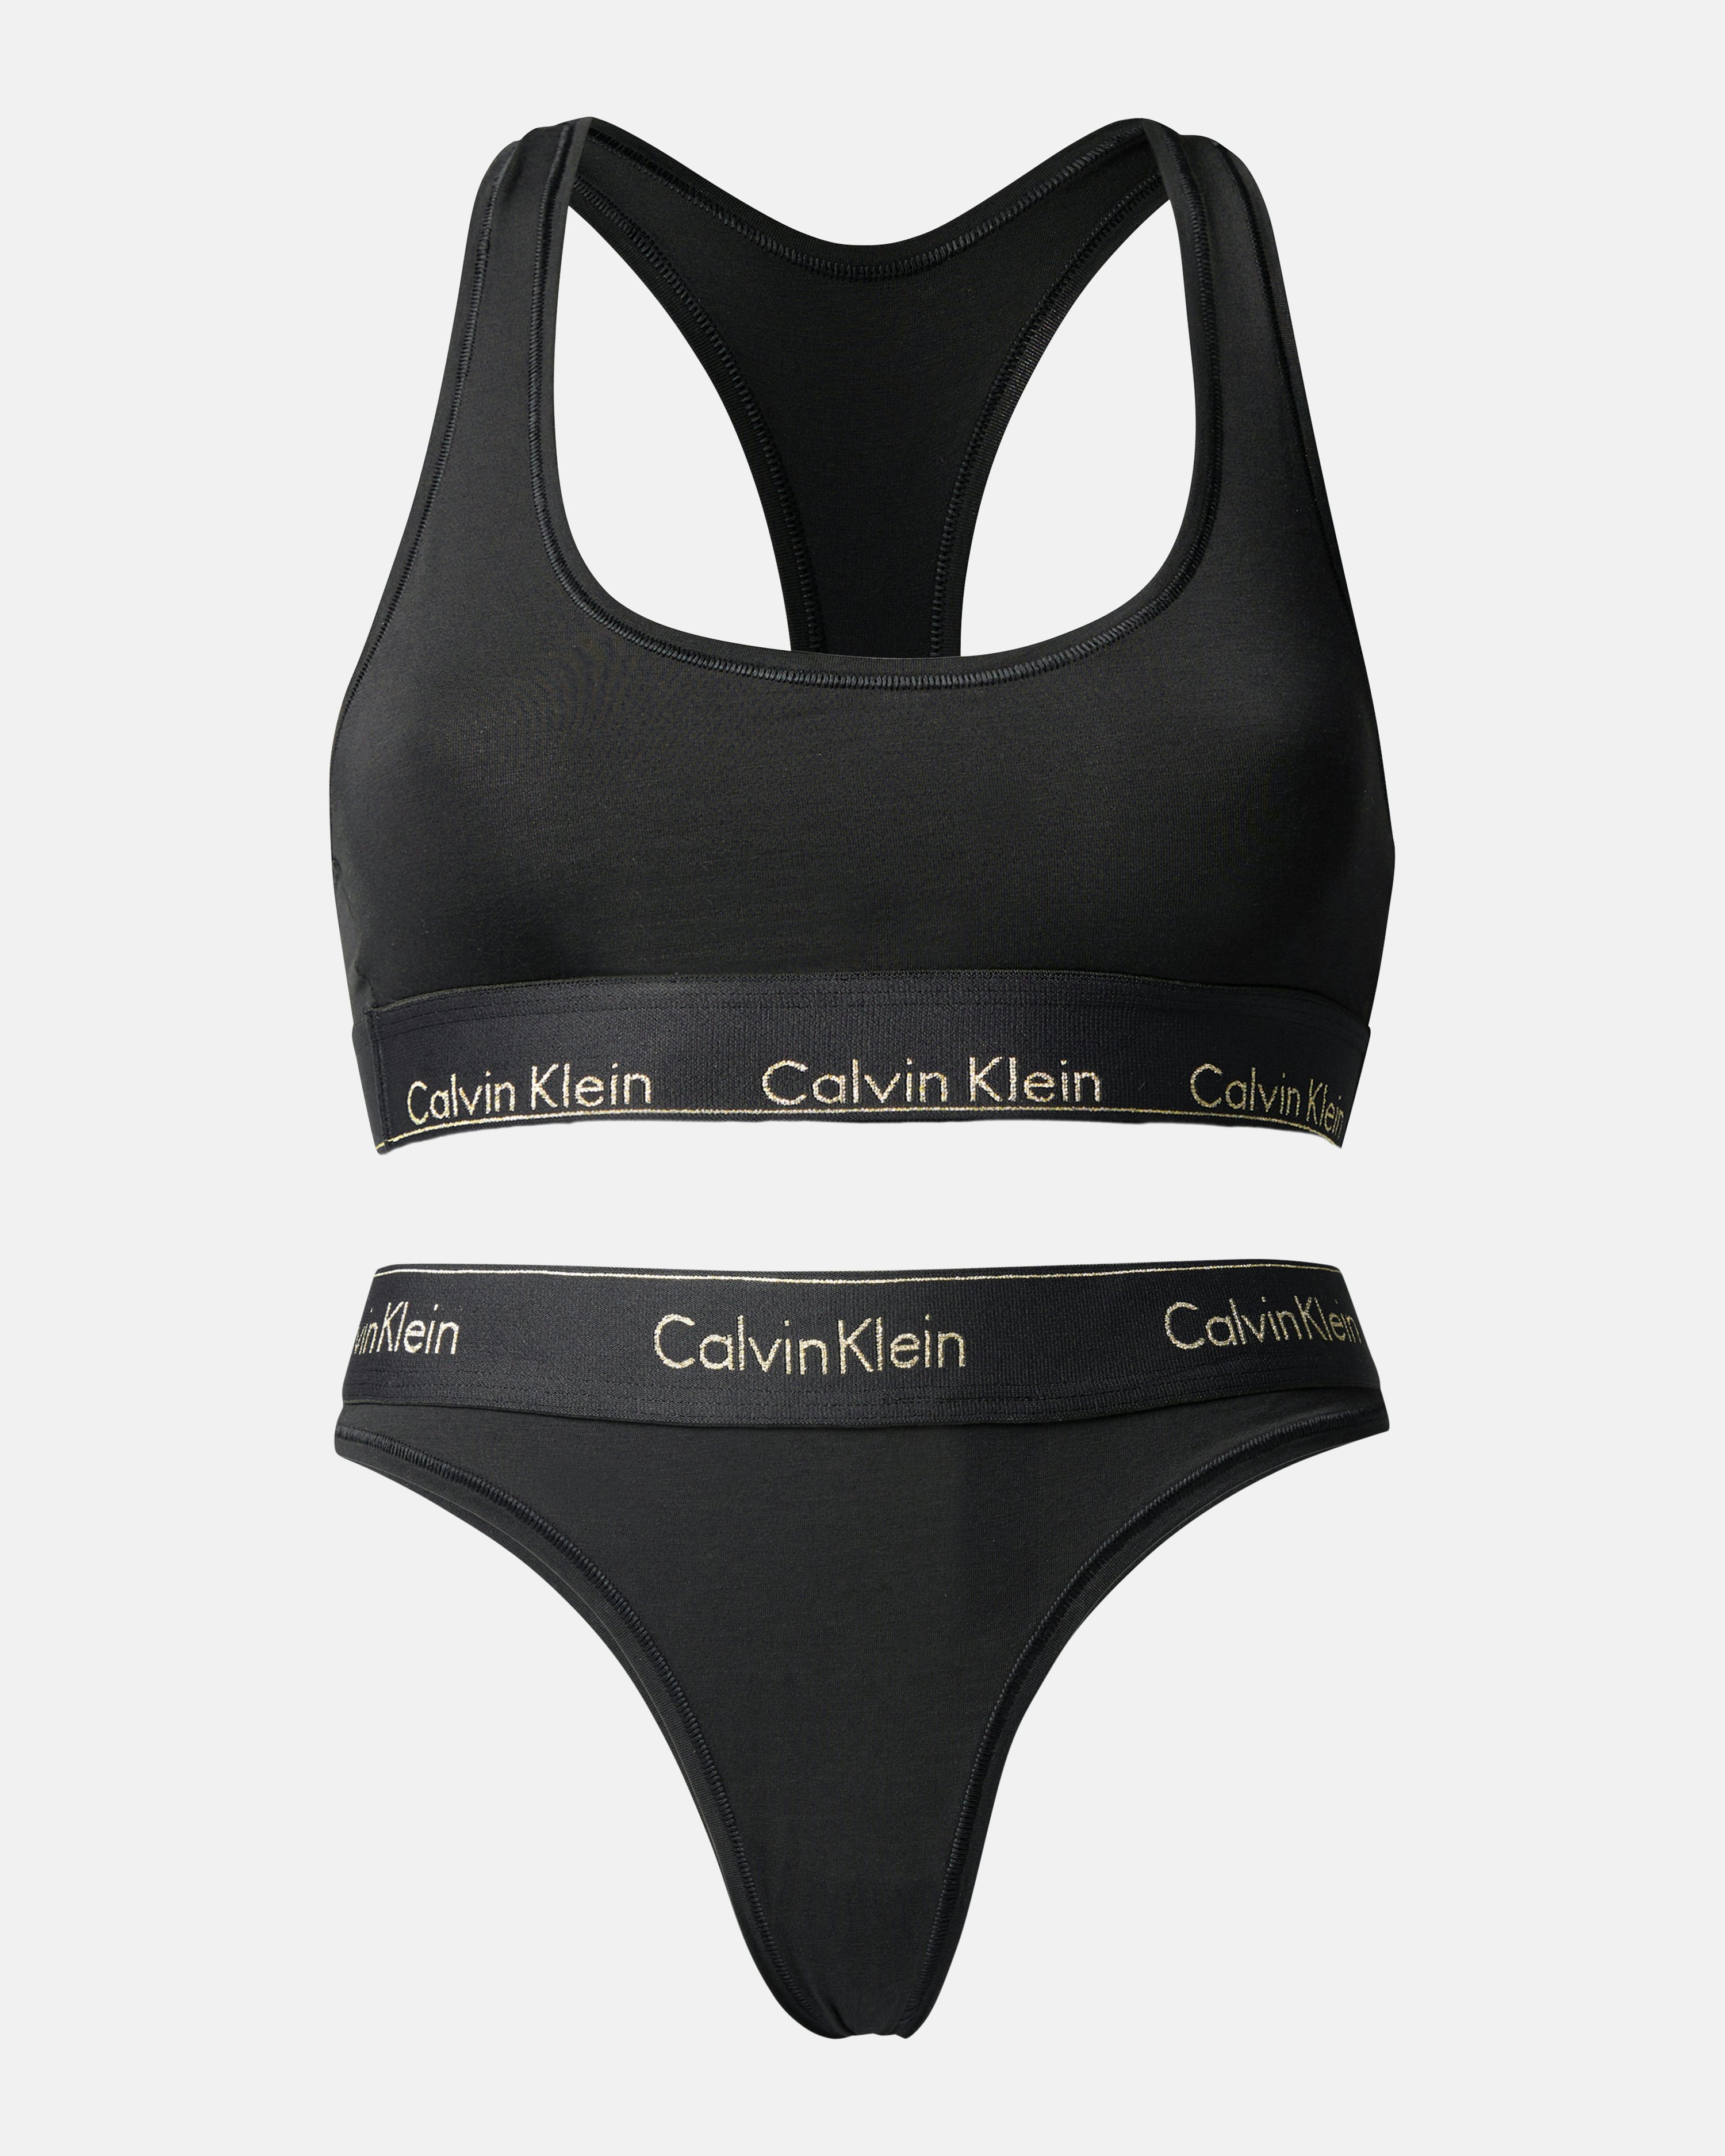 Calvin Klein Underwear Bralette And Thong Set Black